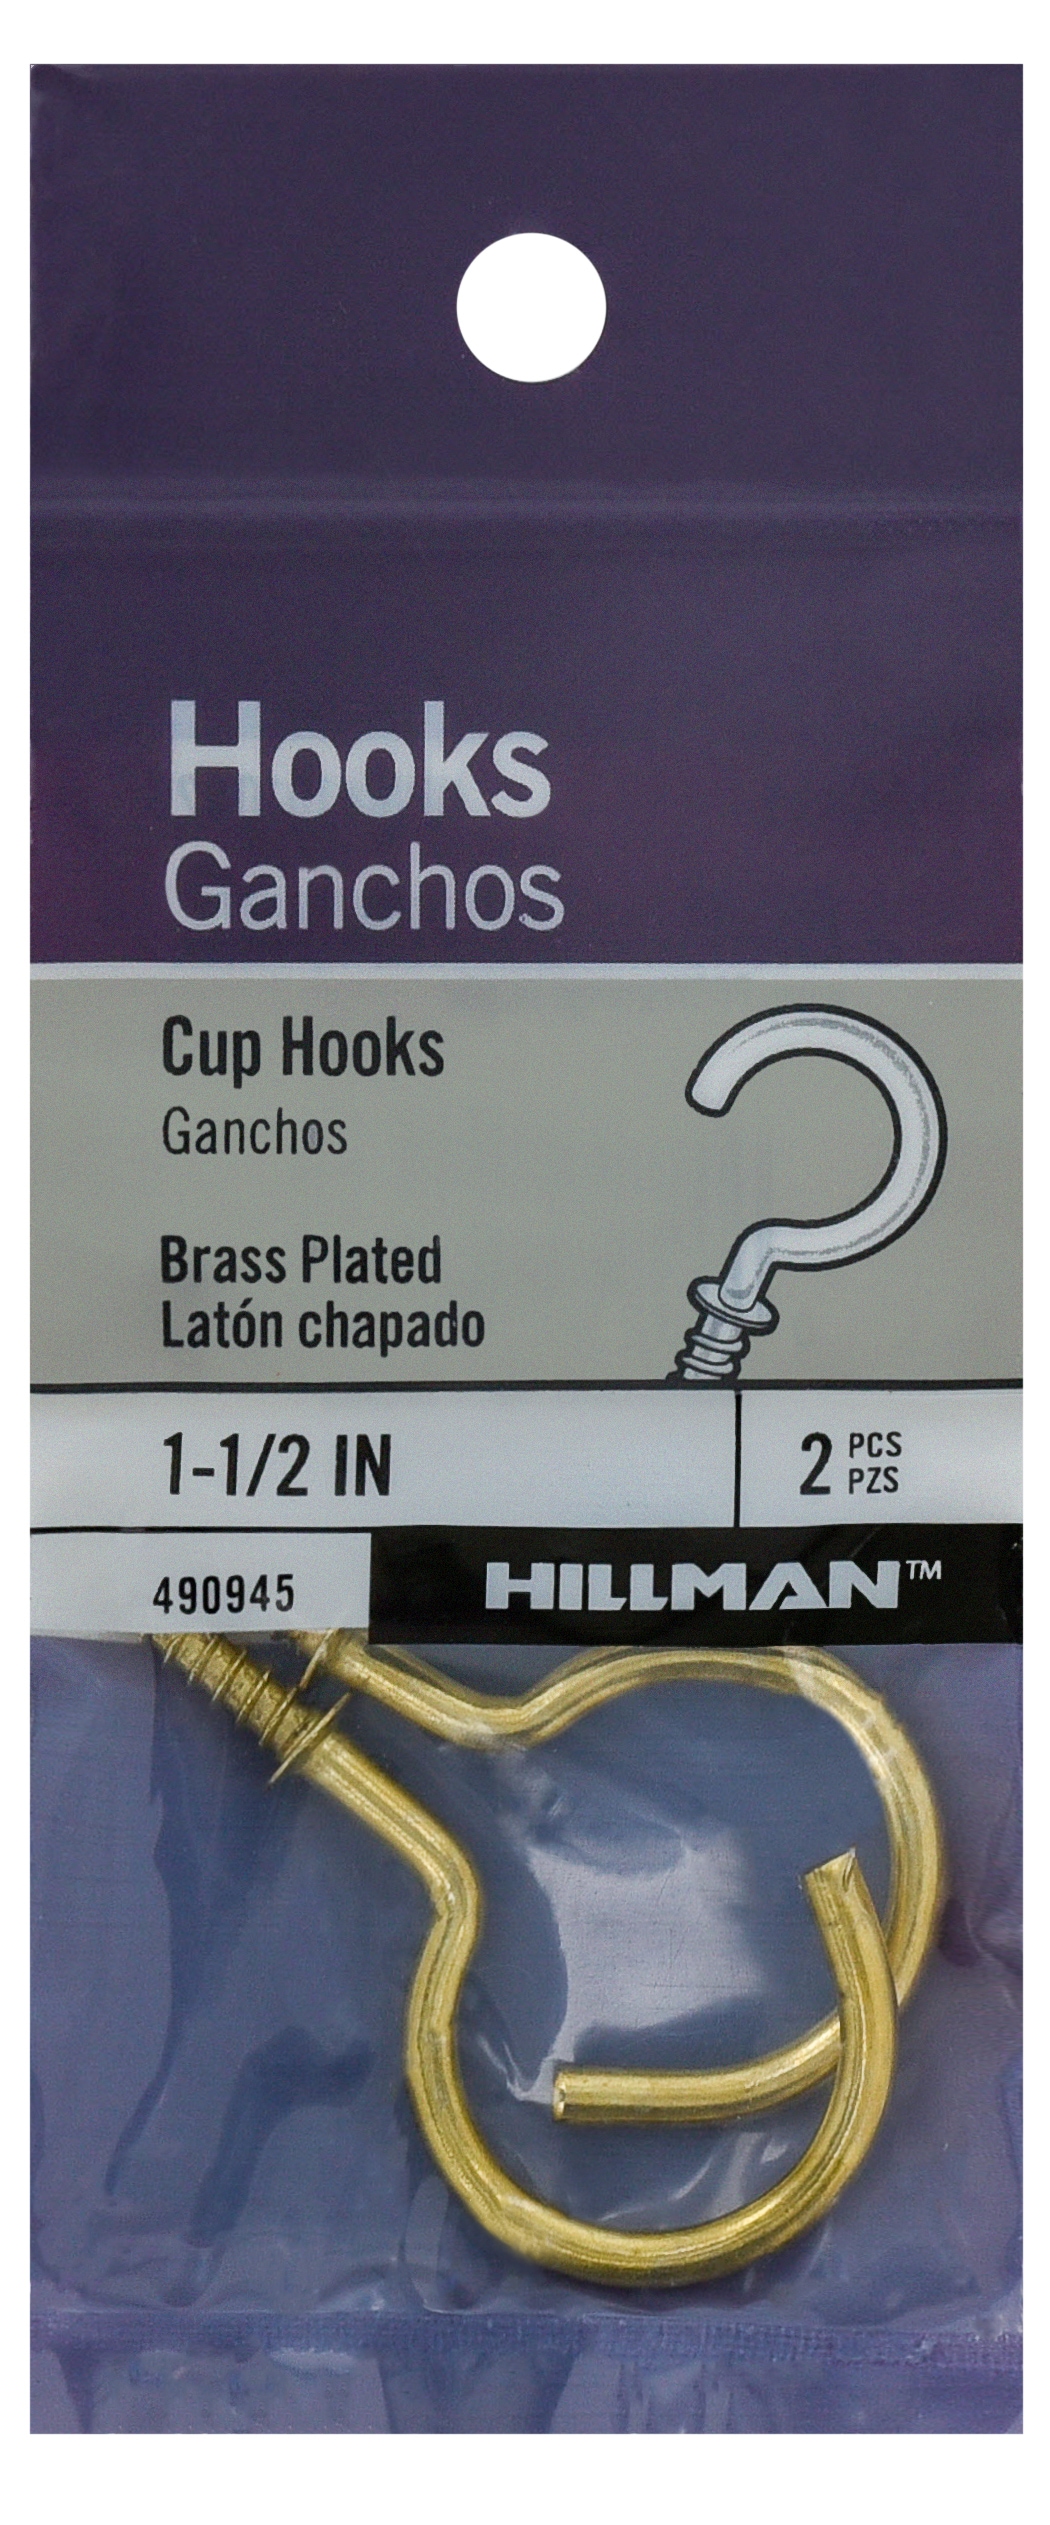 Hillman Steel Vinyl Mug Cup Hooks, Screw-In, Nickel-Plated, 7/8-in